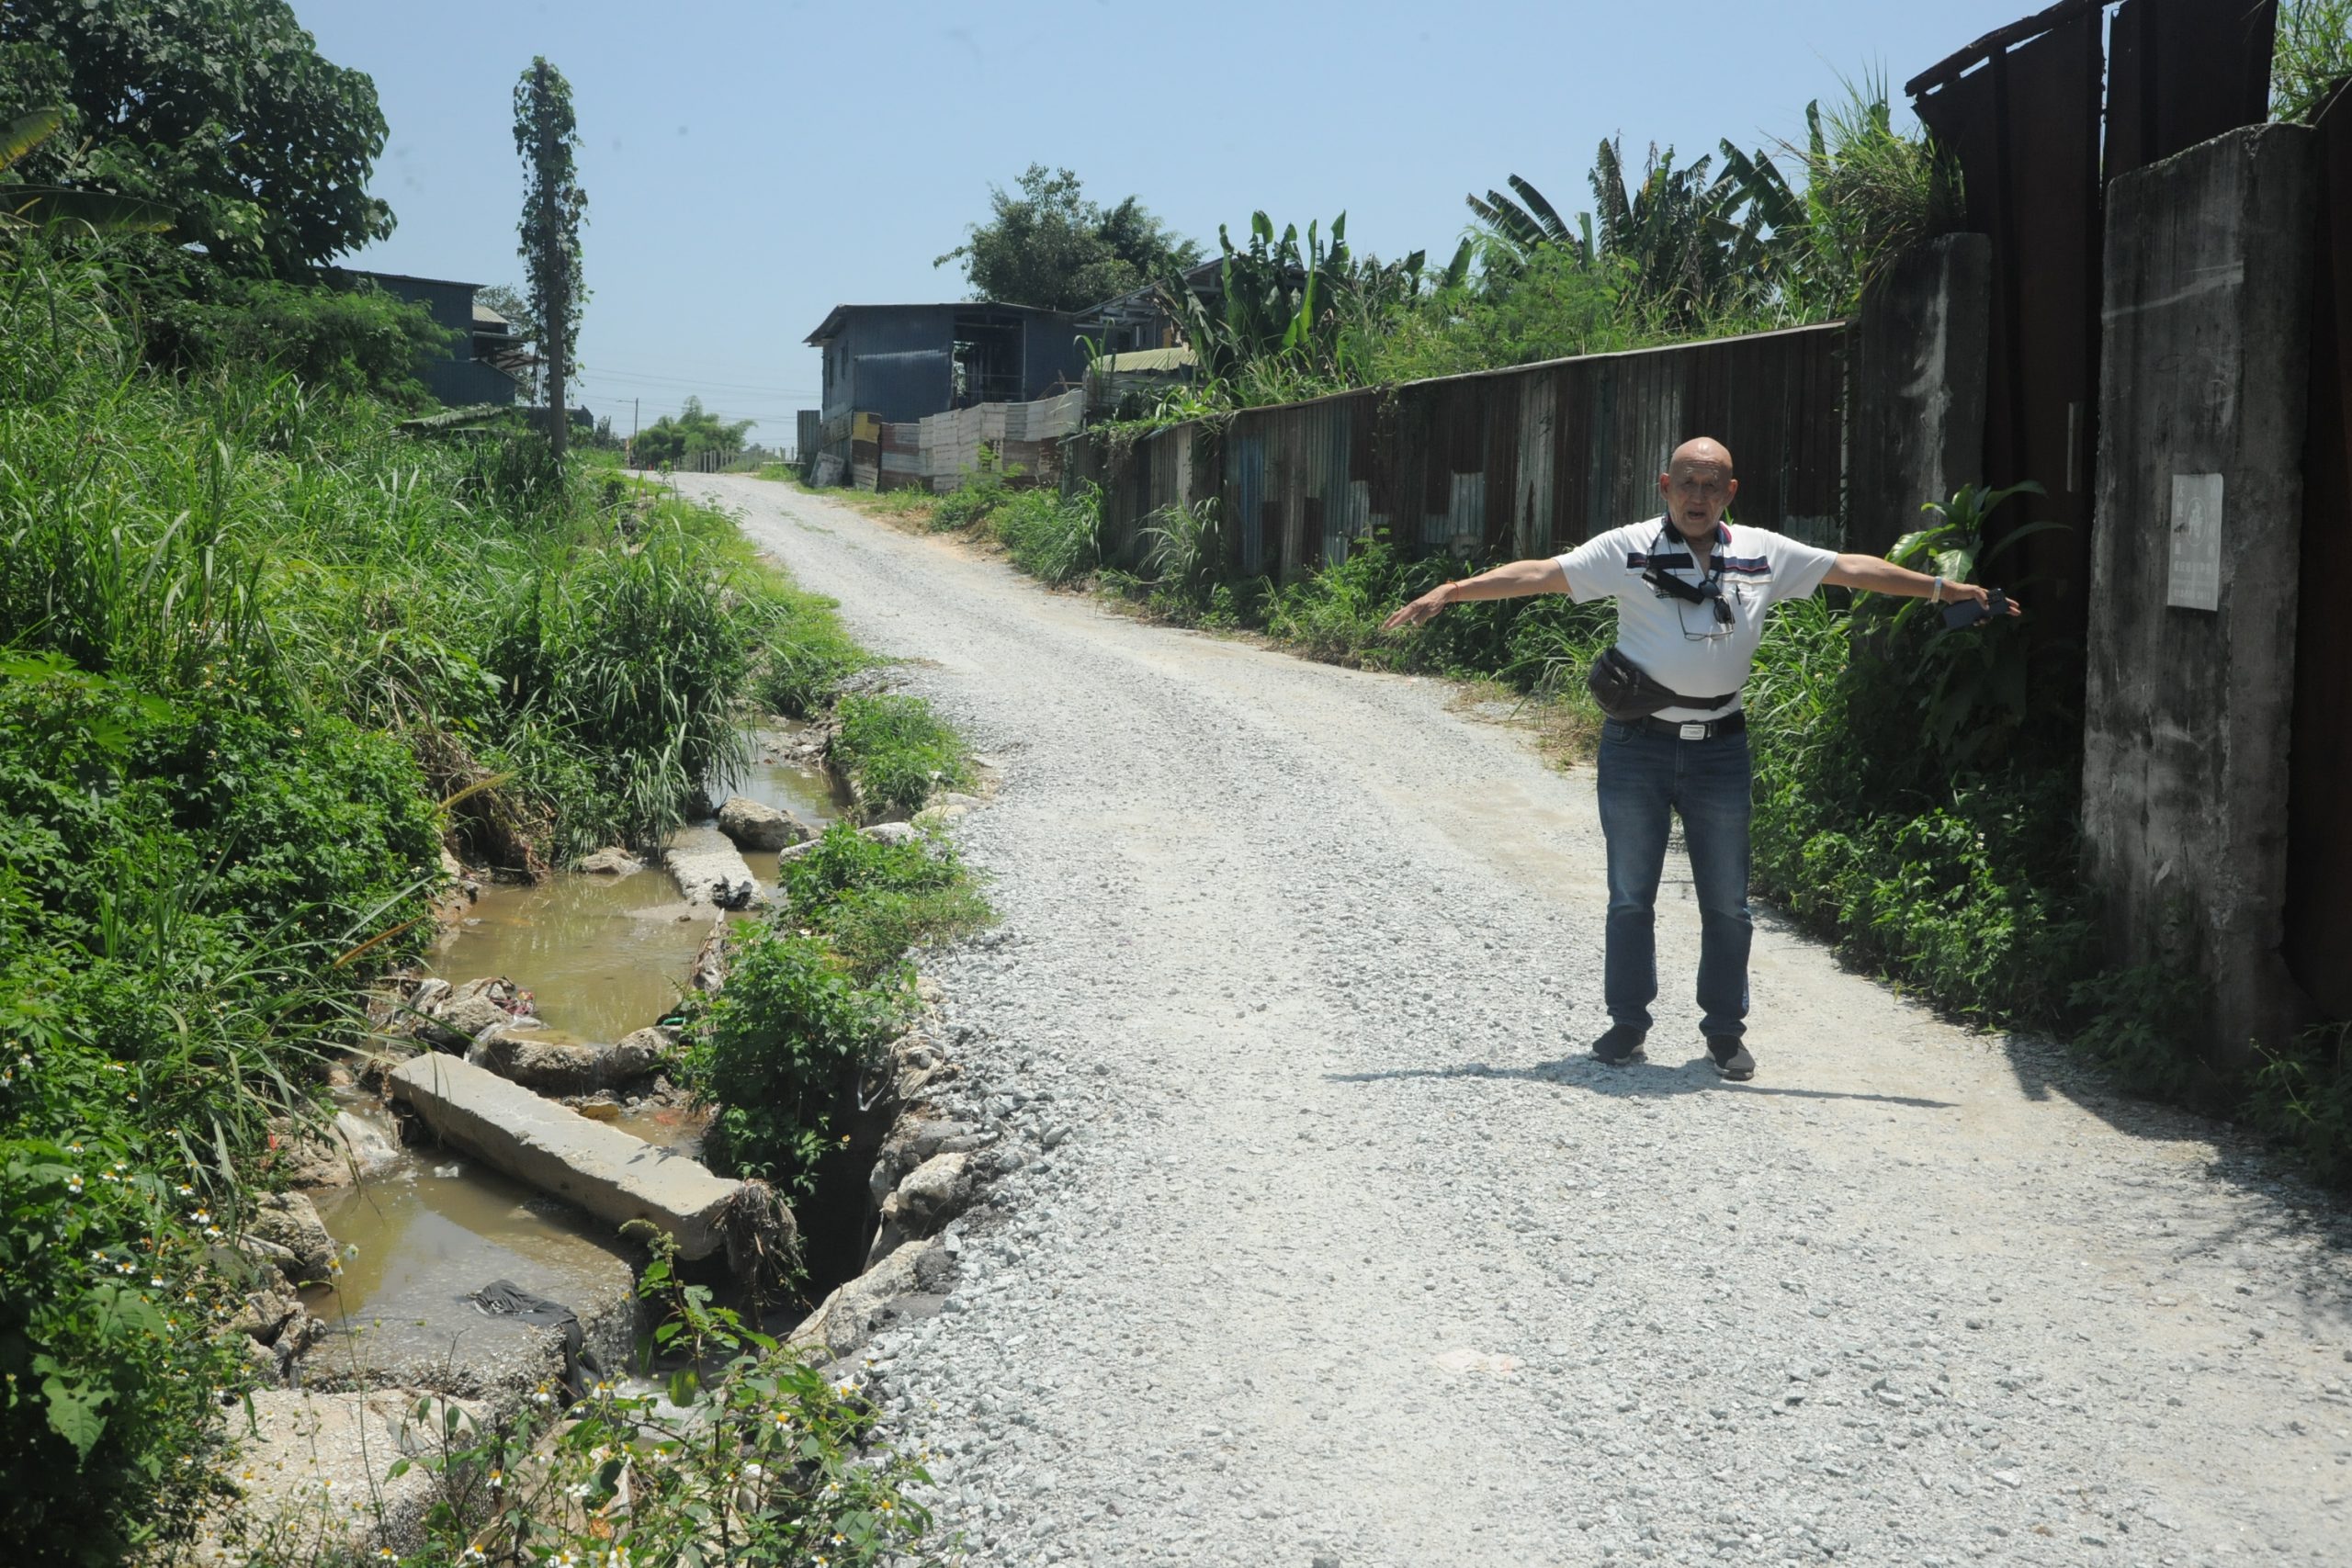 双溪毛糯太平村11哩工业区 河流侵蚀道路破损不堪